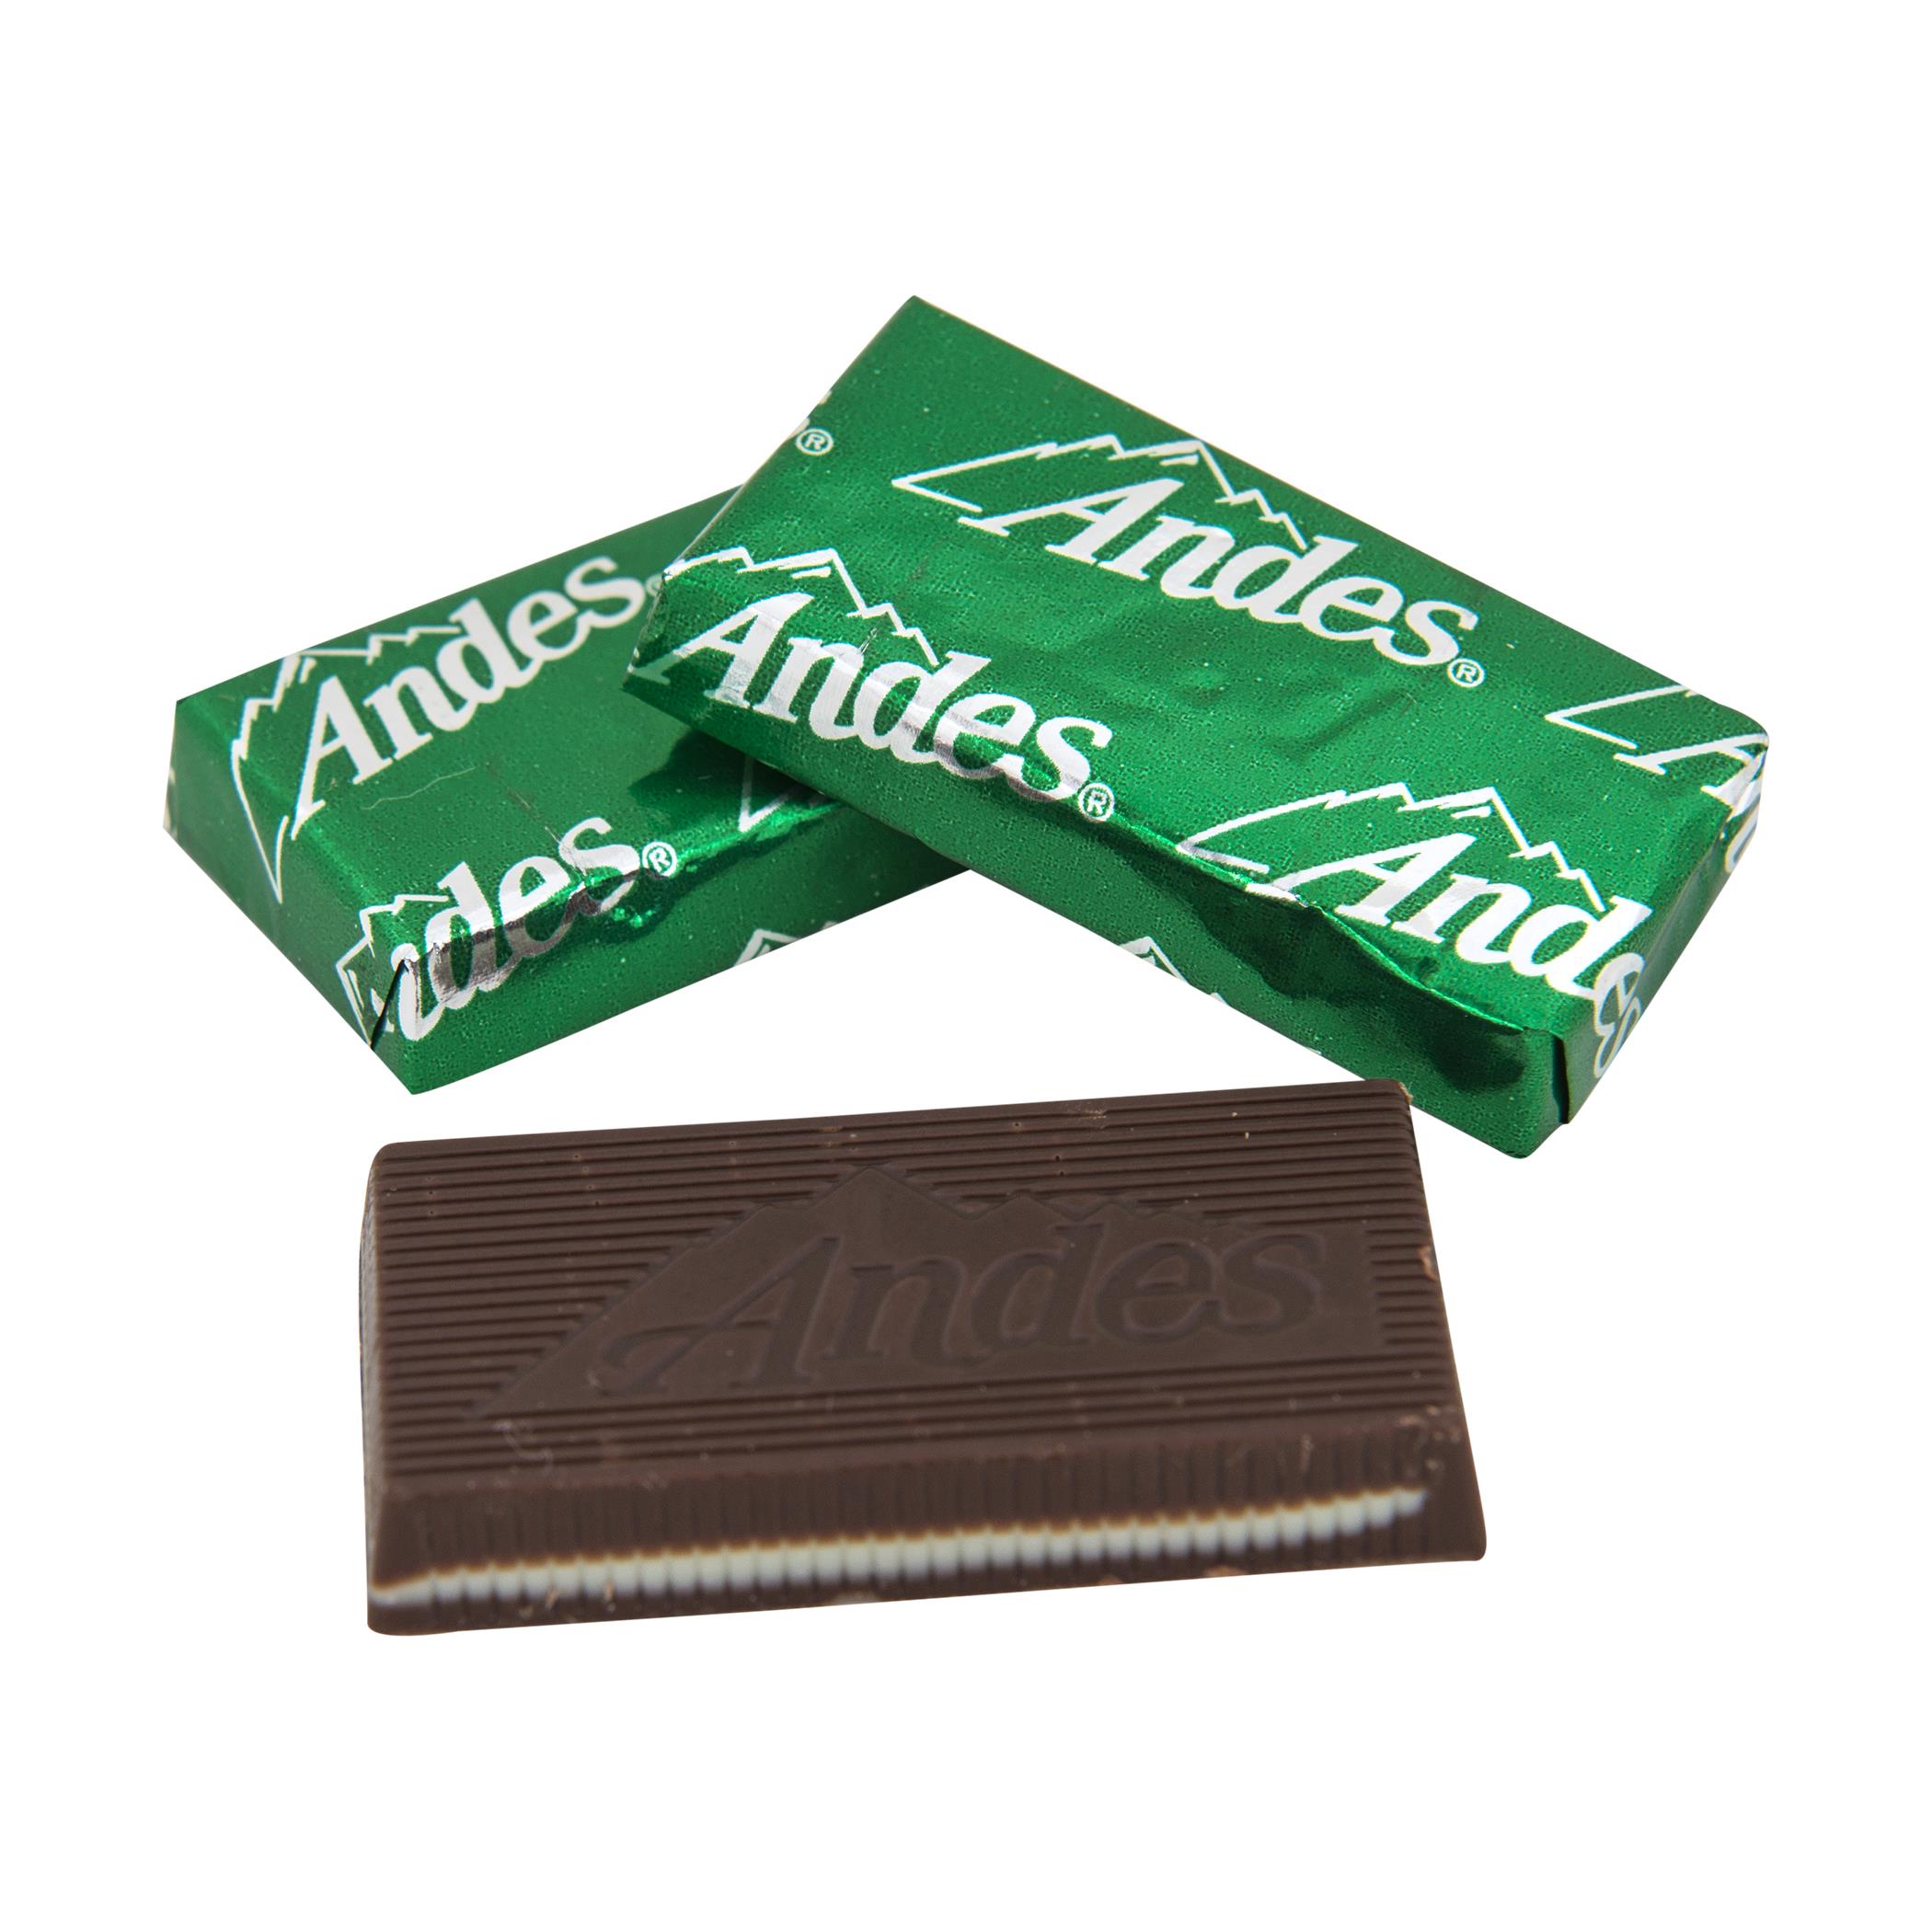 Andes Creme De Menthe Mints (240 ct) - Click Image to Close